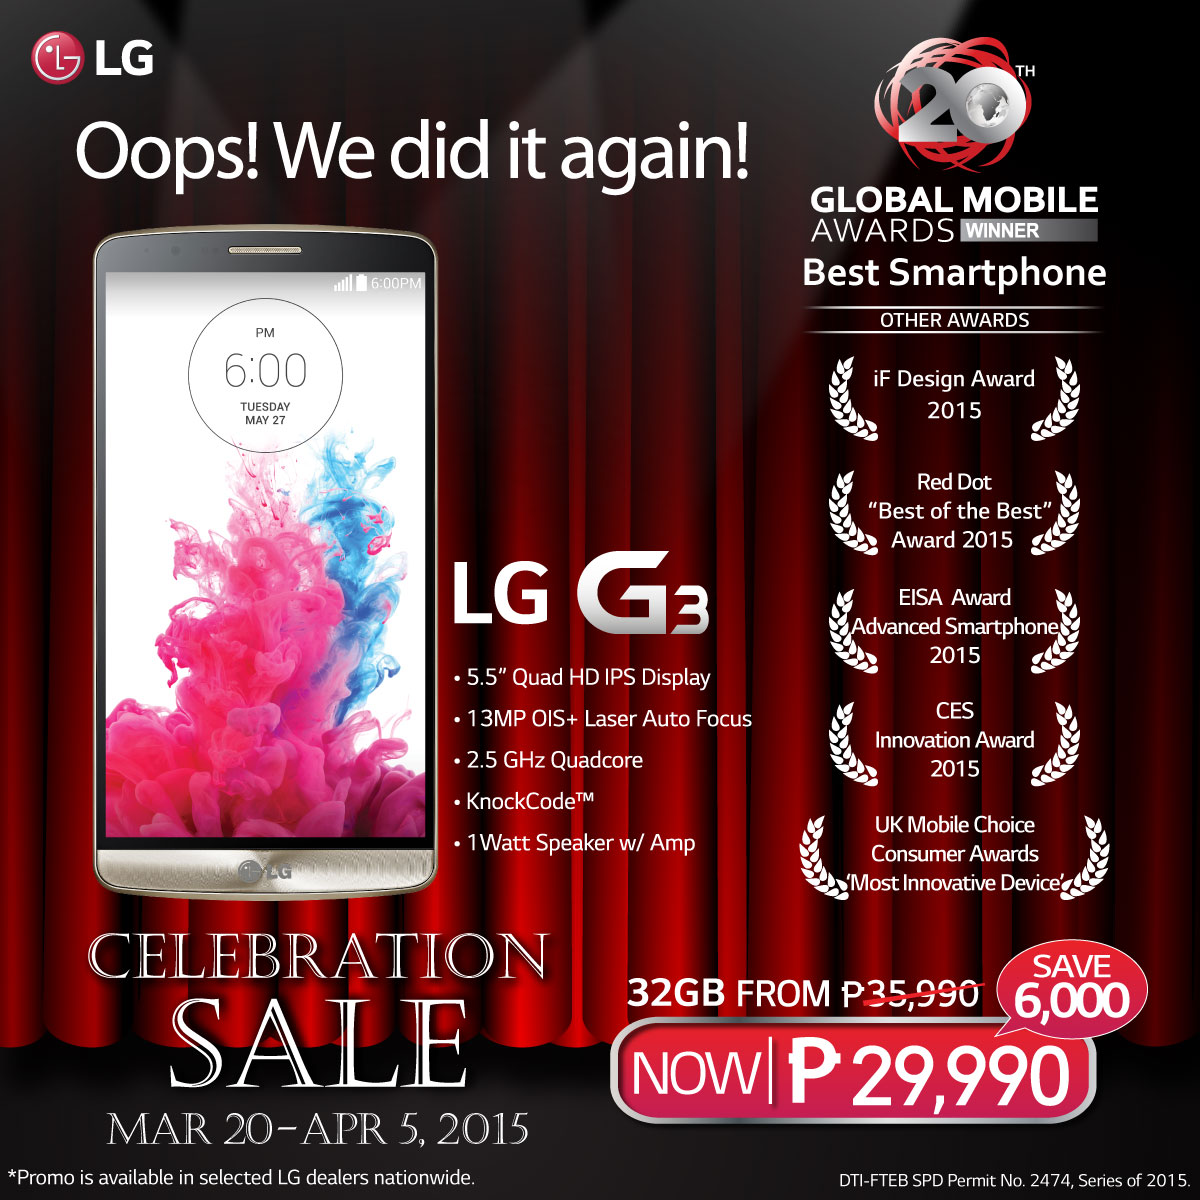 LG G3 celebration sale